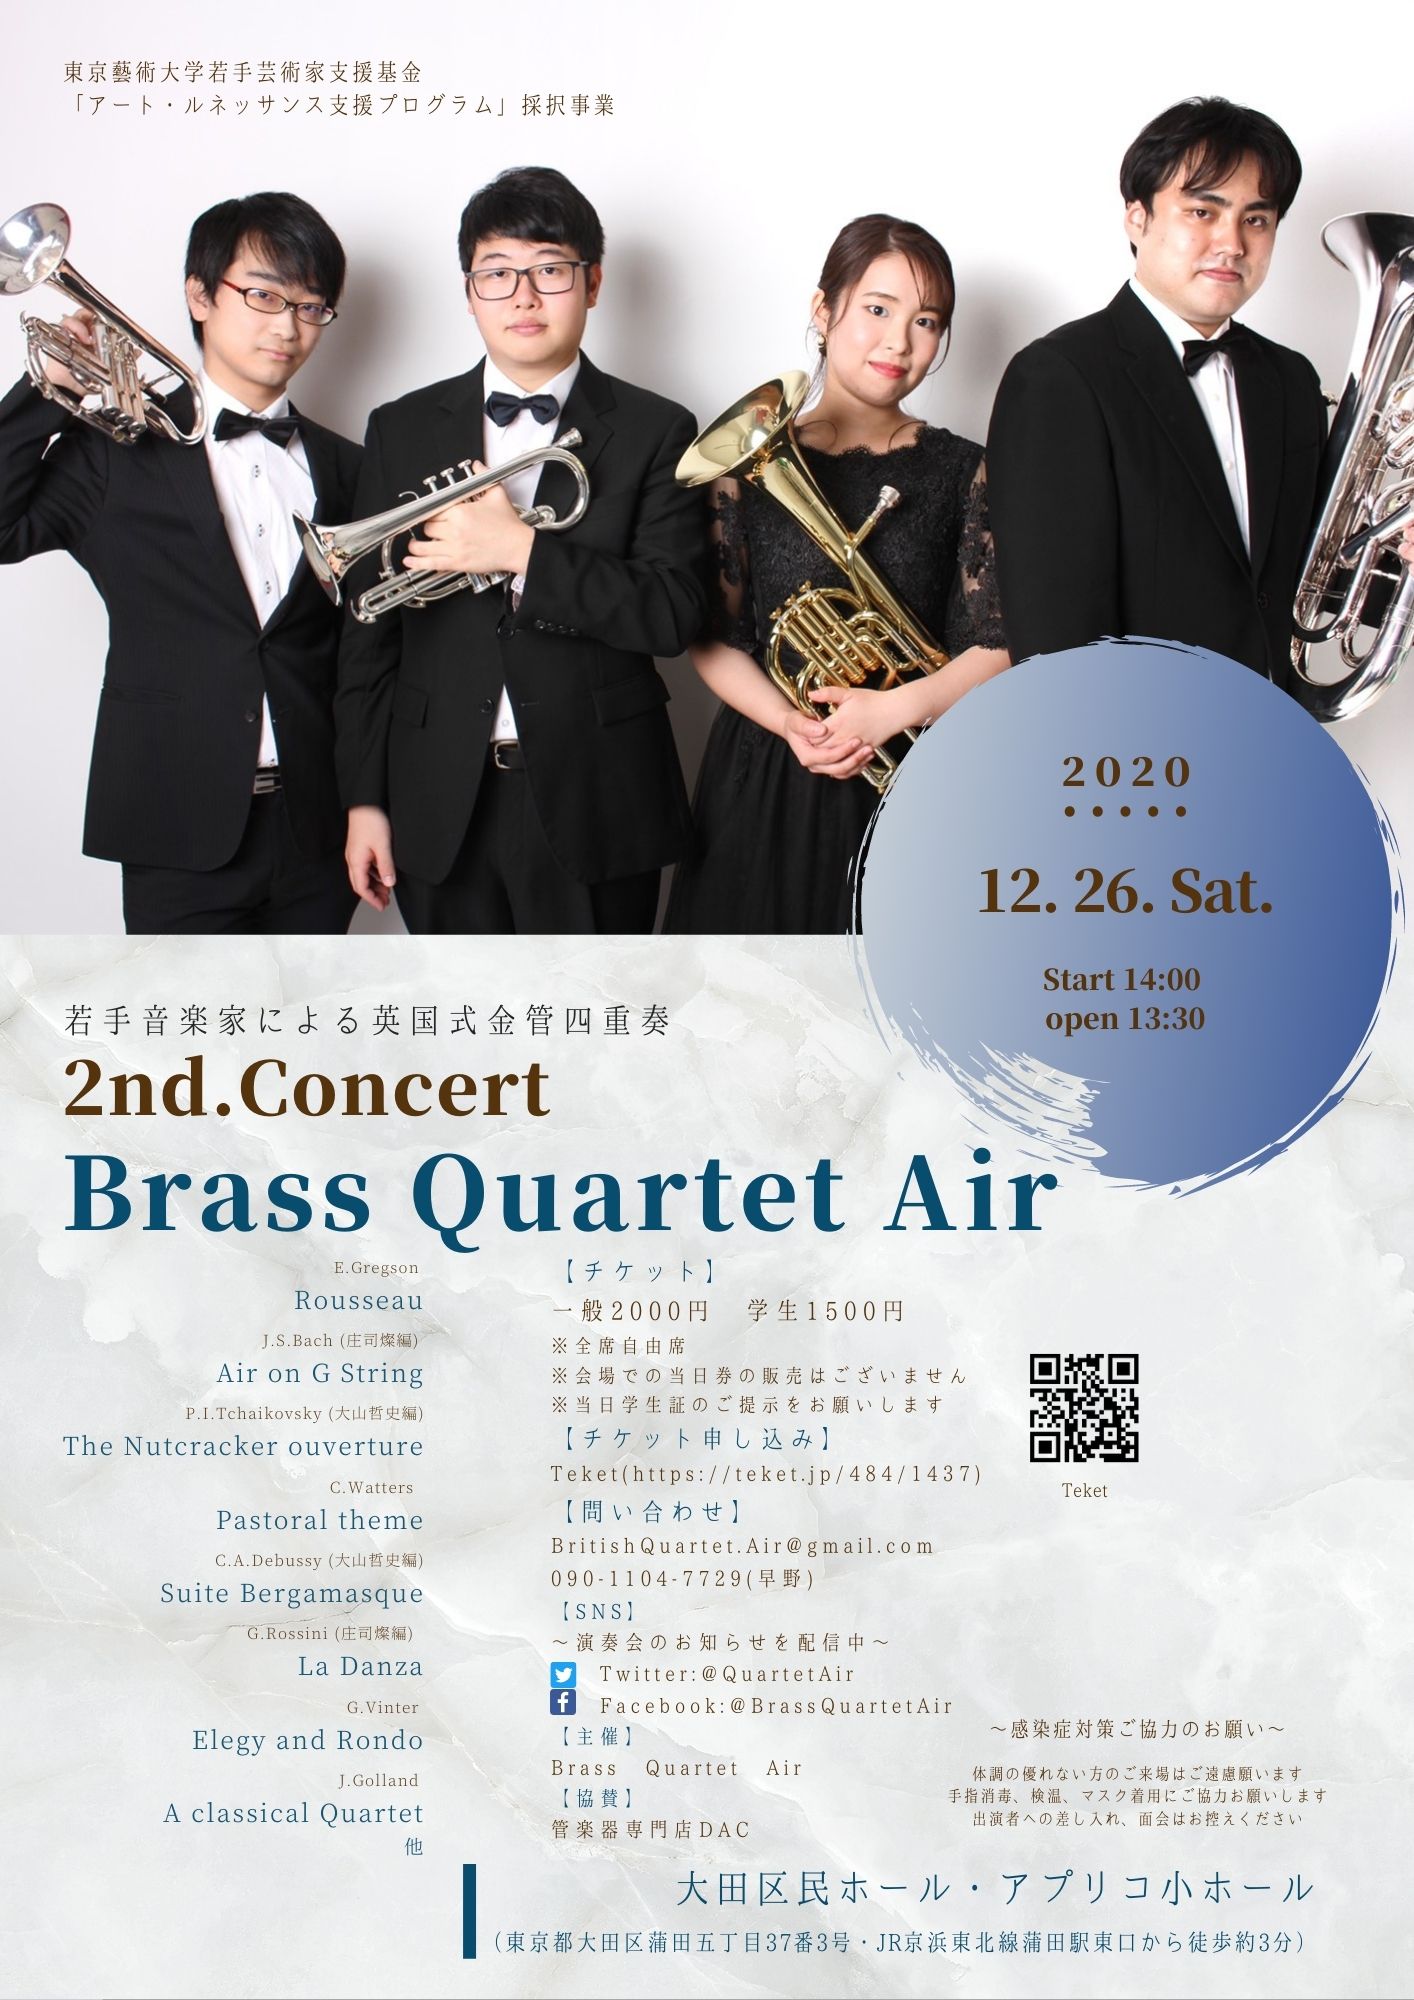 Brass Quartet Air